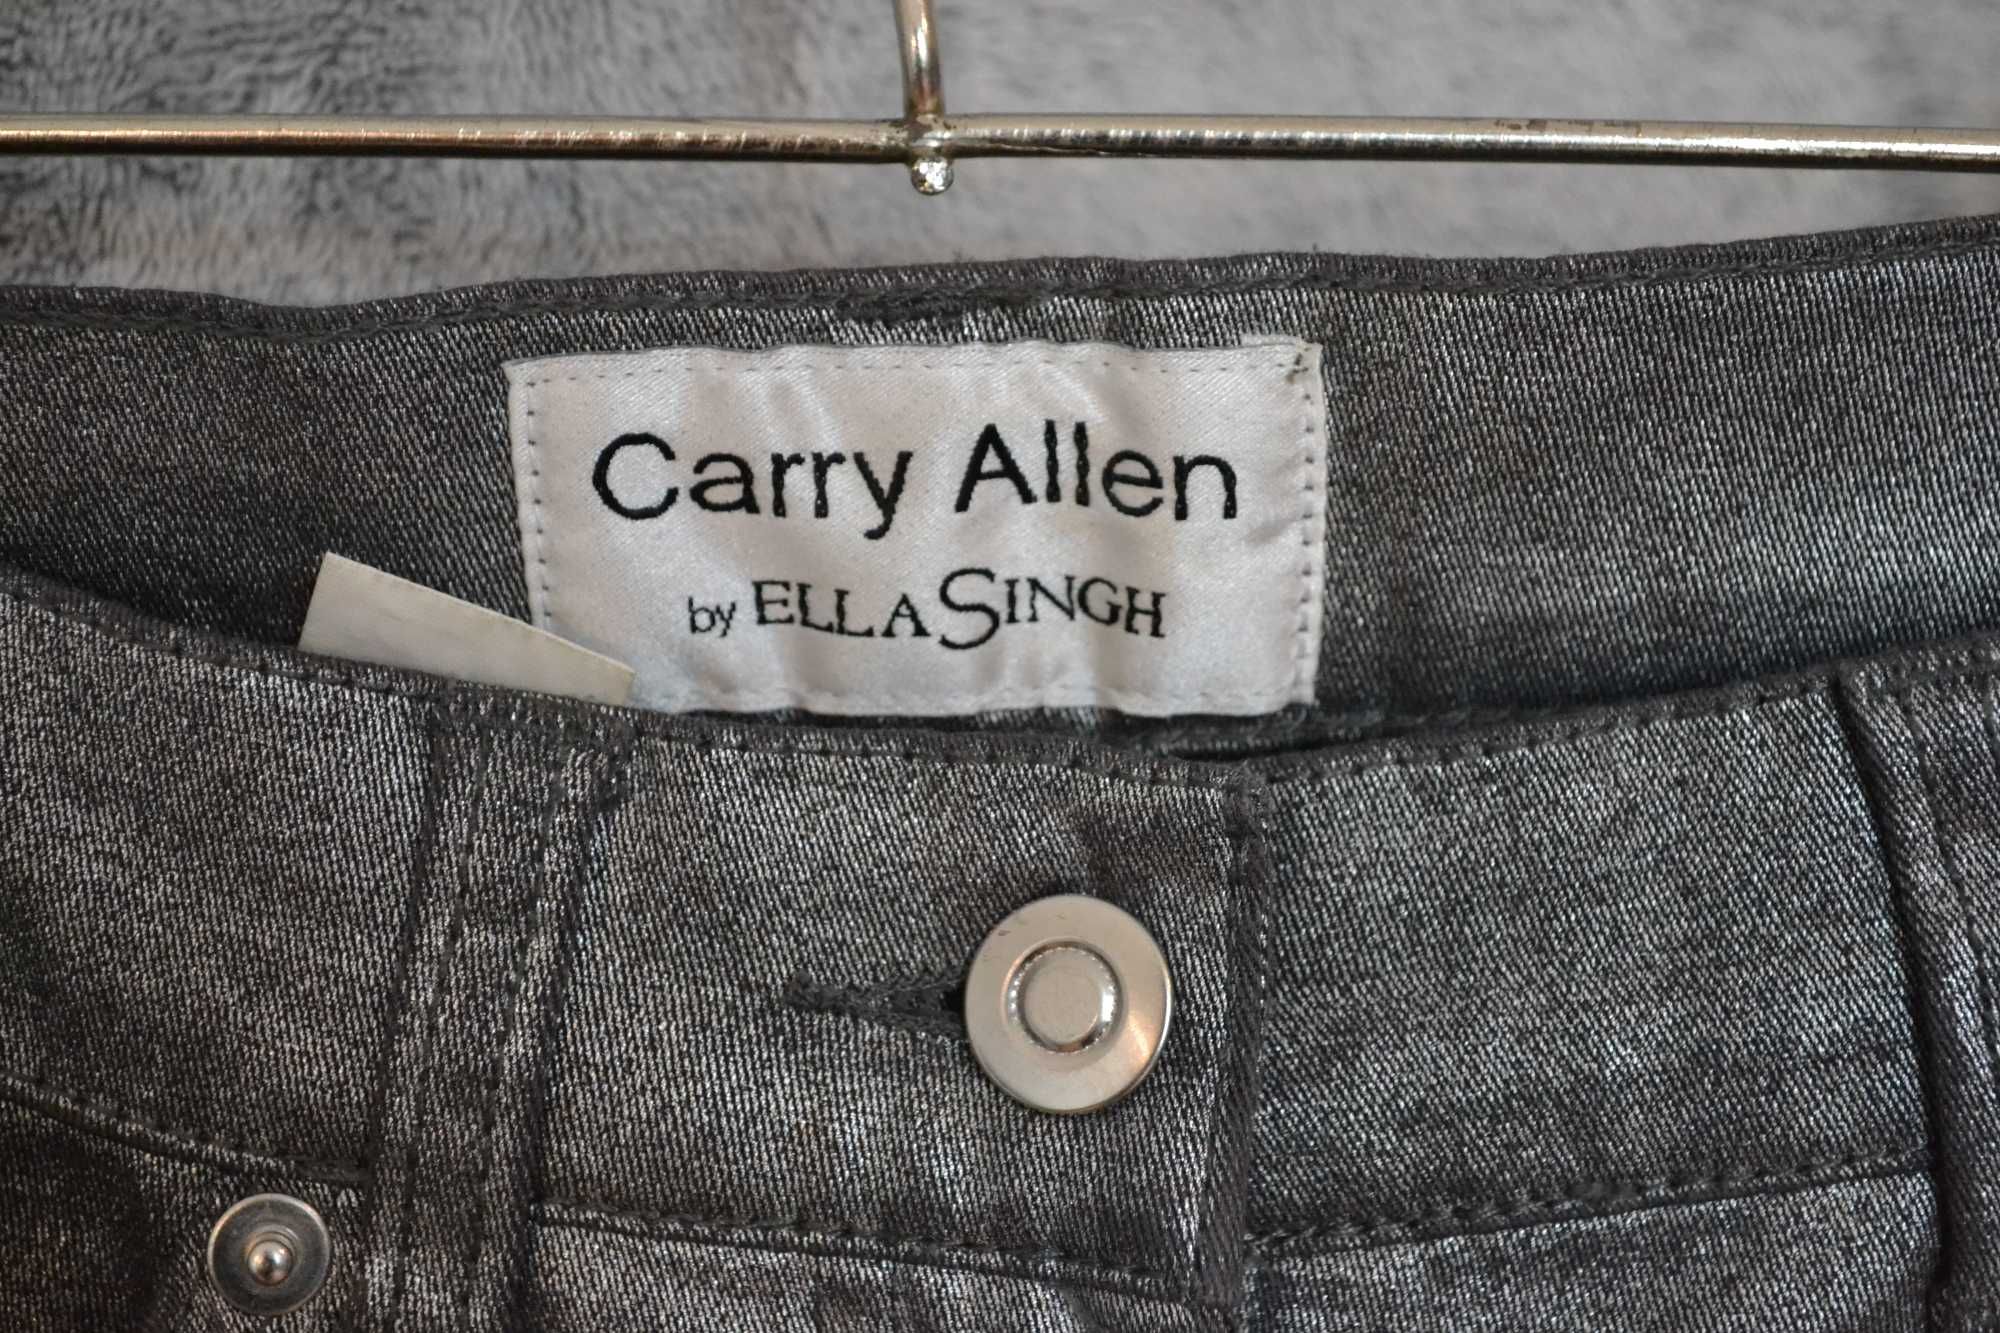 Spodnie damskie Carry Allen by Ella Singh, srebrne w rozmiarze 36.